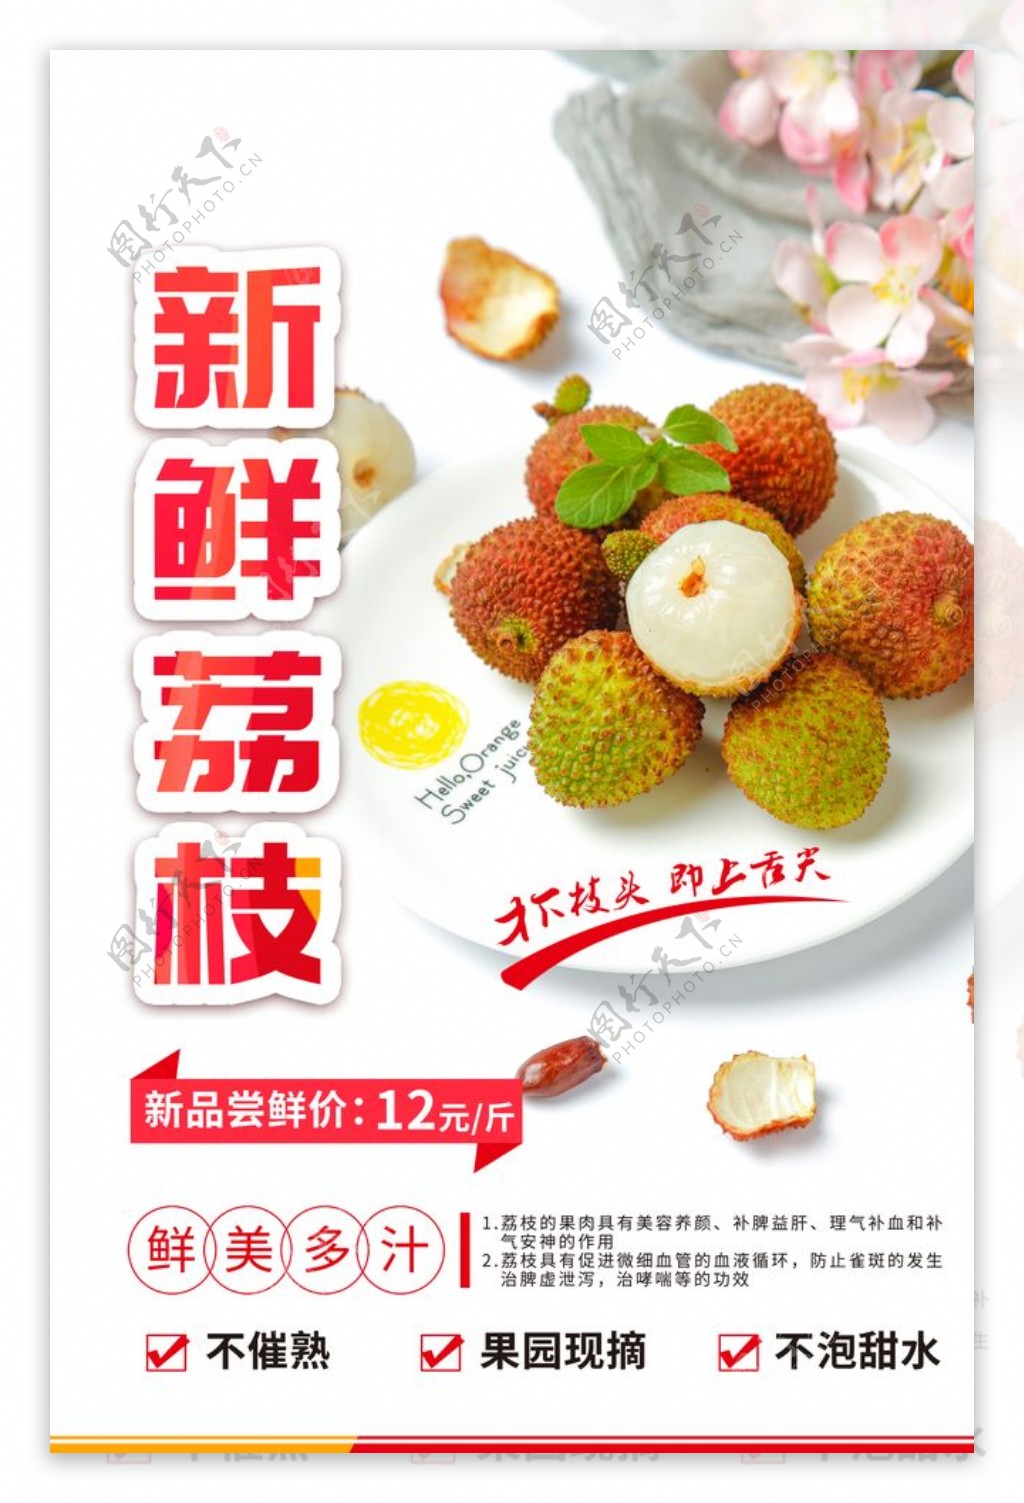 新鲜荔枝水果活动宣传海报素材图片